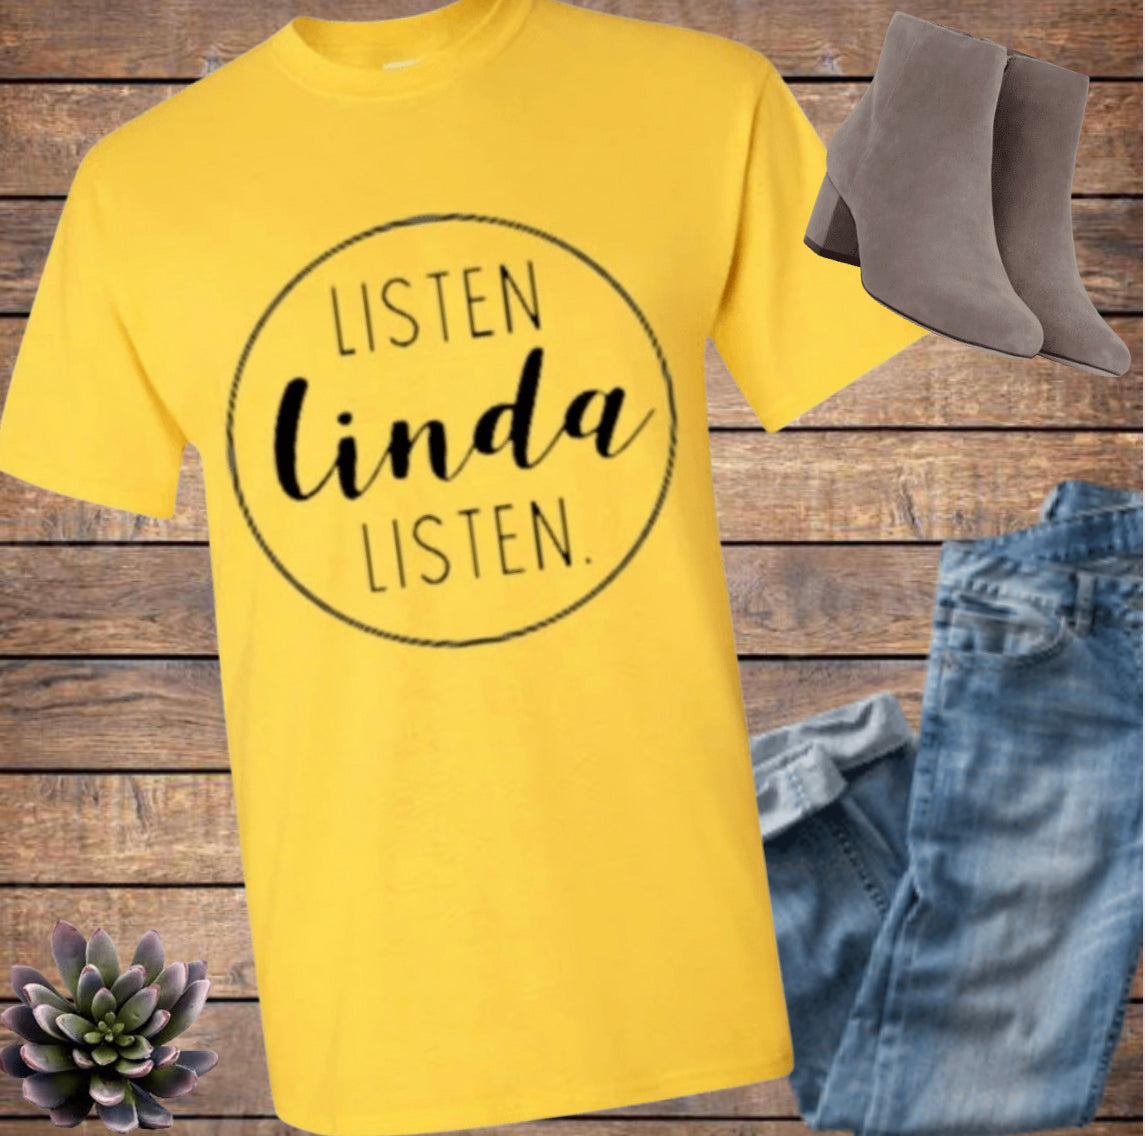 Listen Linda Listen Tee Shirt Top T-Shirt